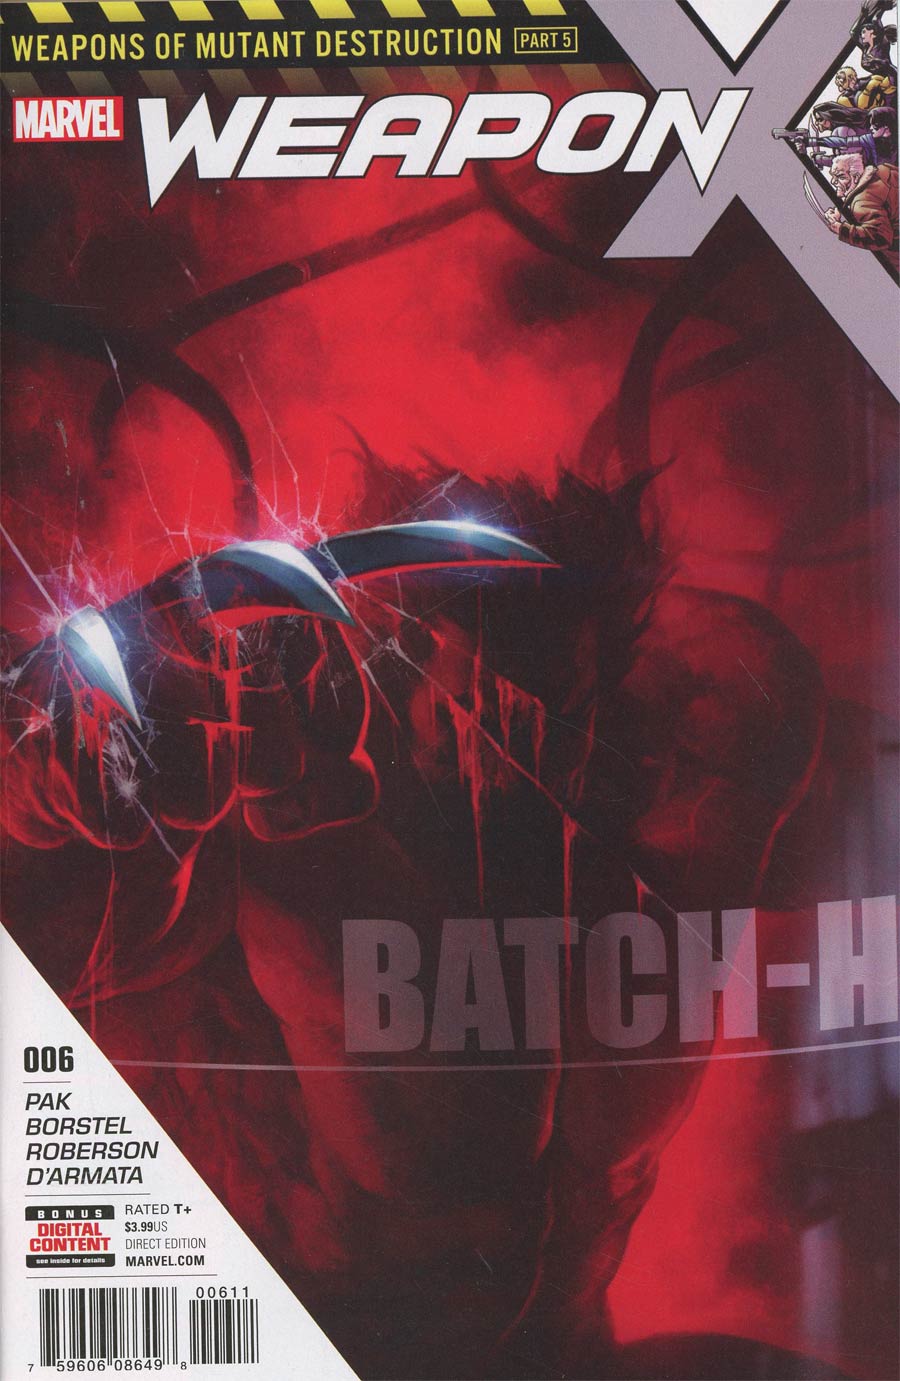 Weapon X Vol 3 #6 Cover A 1st Ptg (Weapons Of Mutant Destruction Part 5)